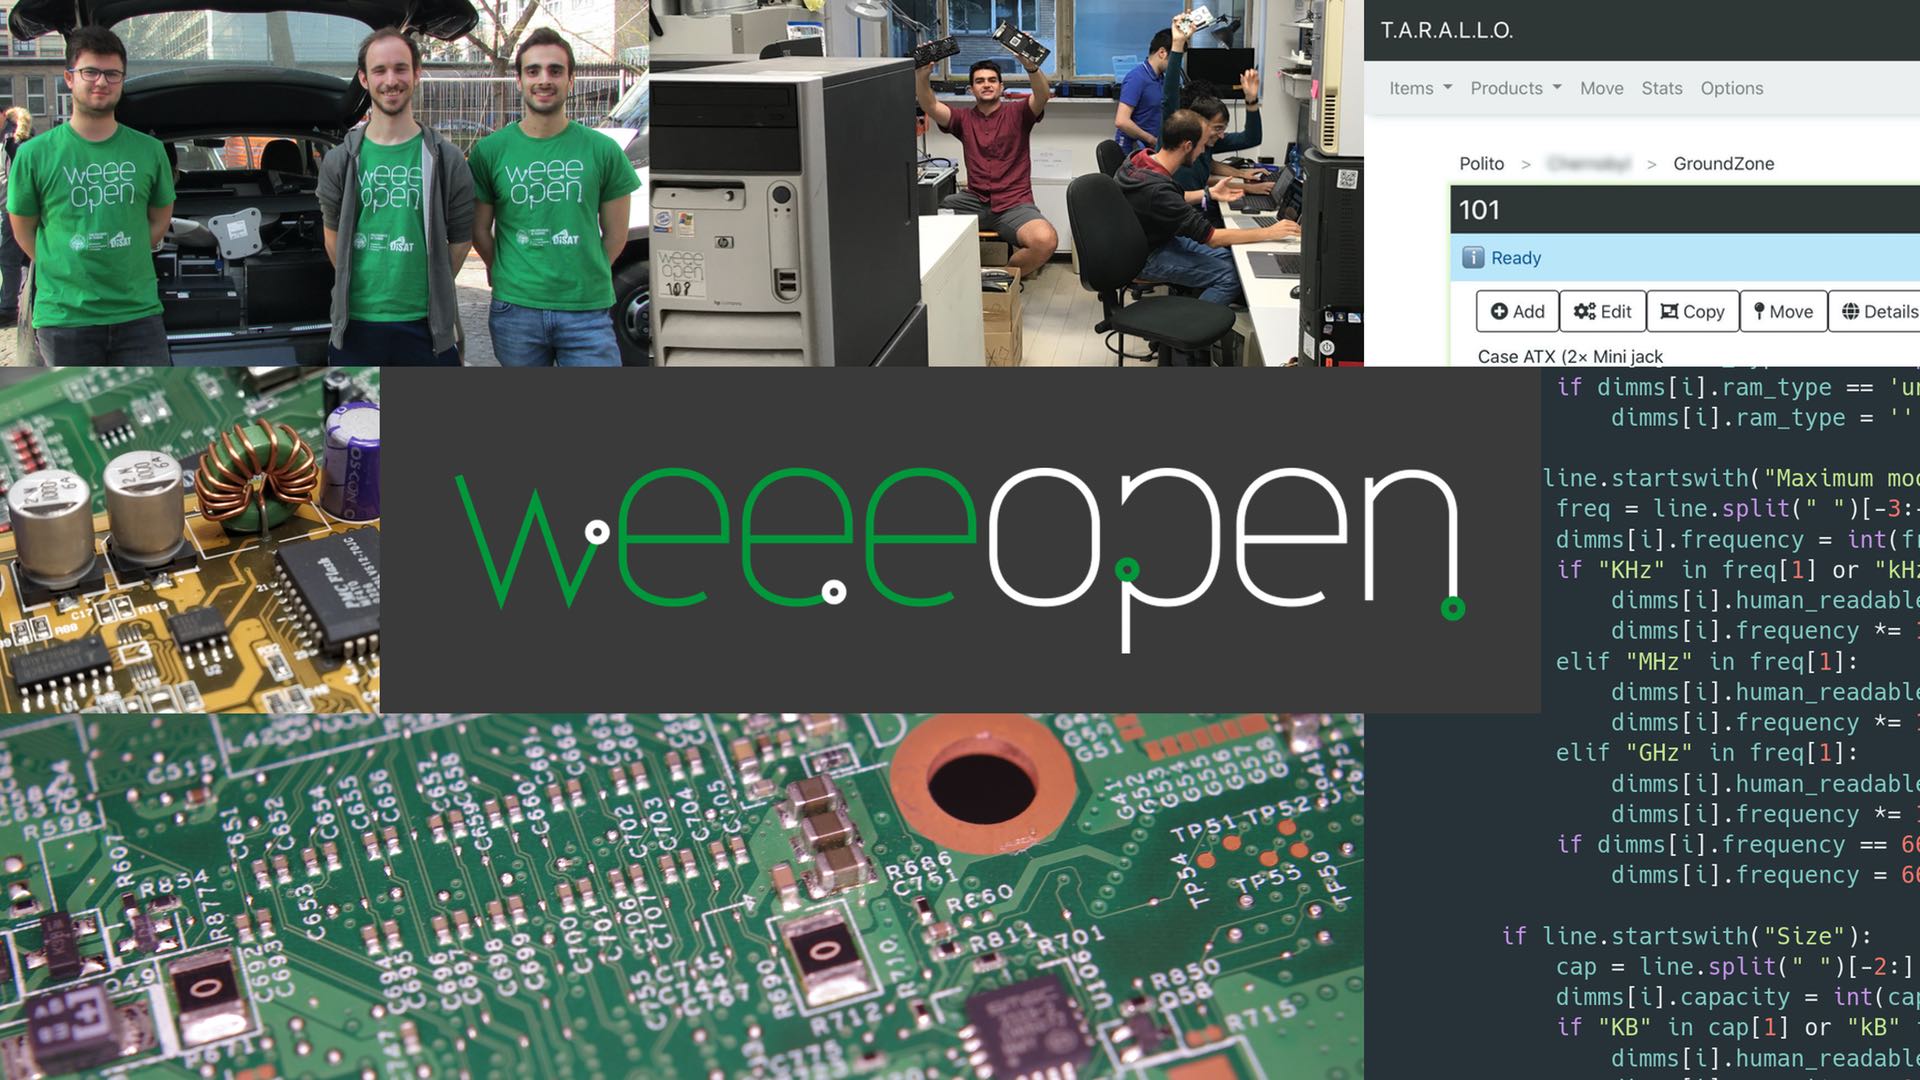 Al momento stai visualizzando Nuovo sito WEEE Open